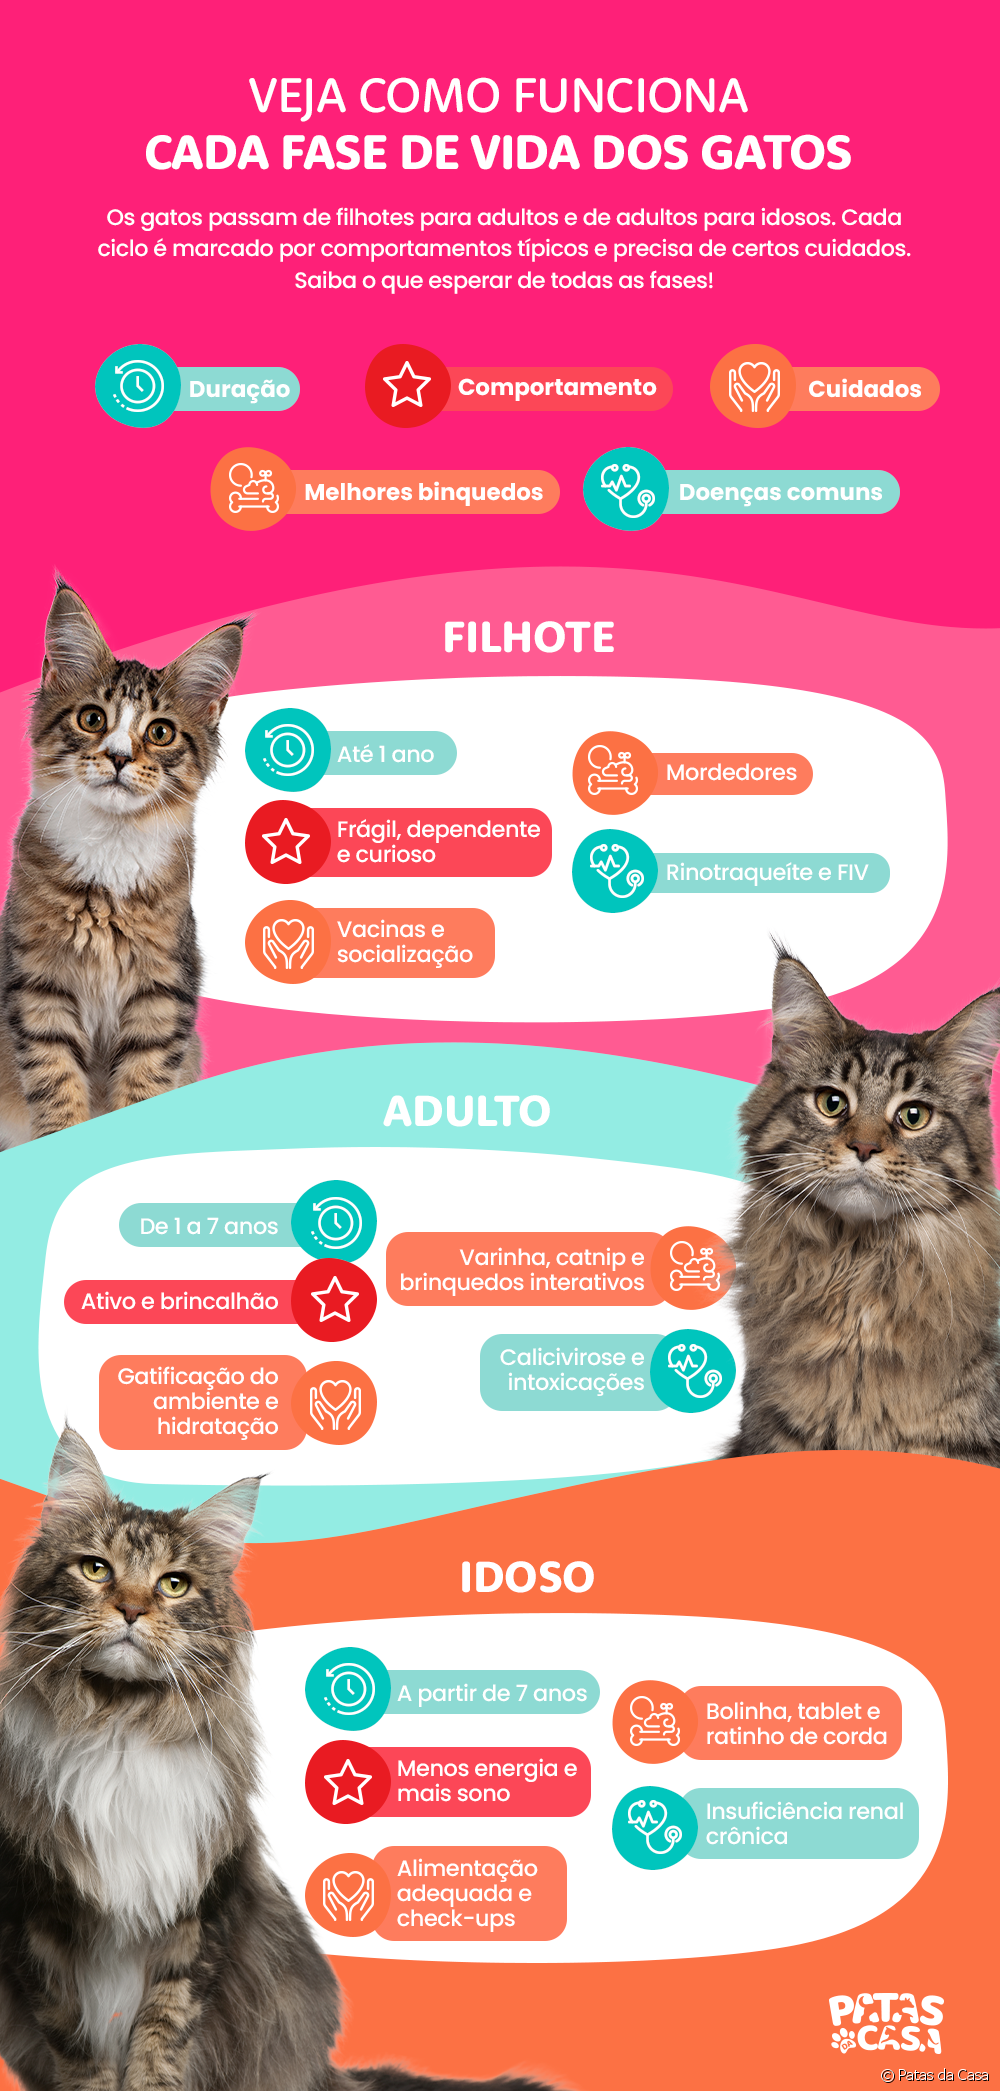  मांजरींचे संपूर्ण जीवनचक्र समजून घ्या (इन्फोग्राफिकसह)